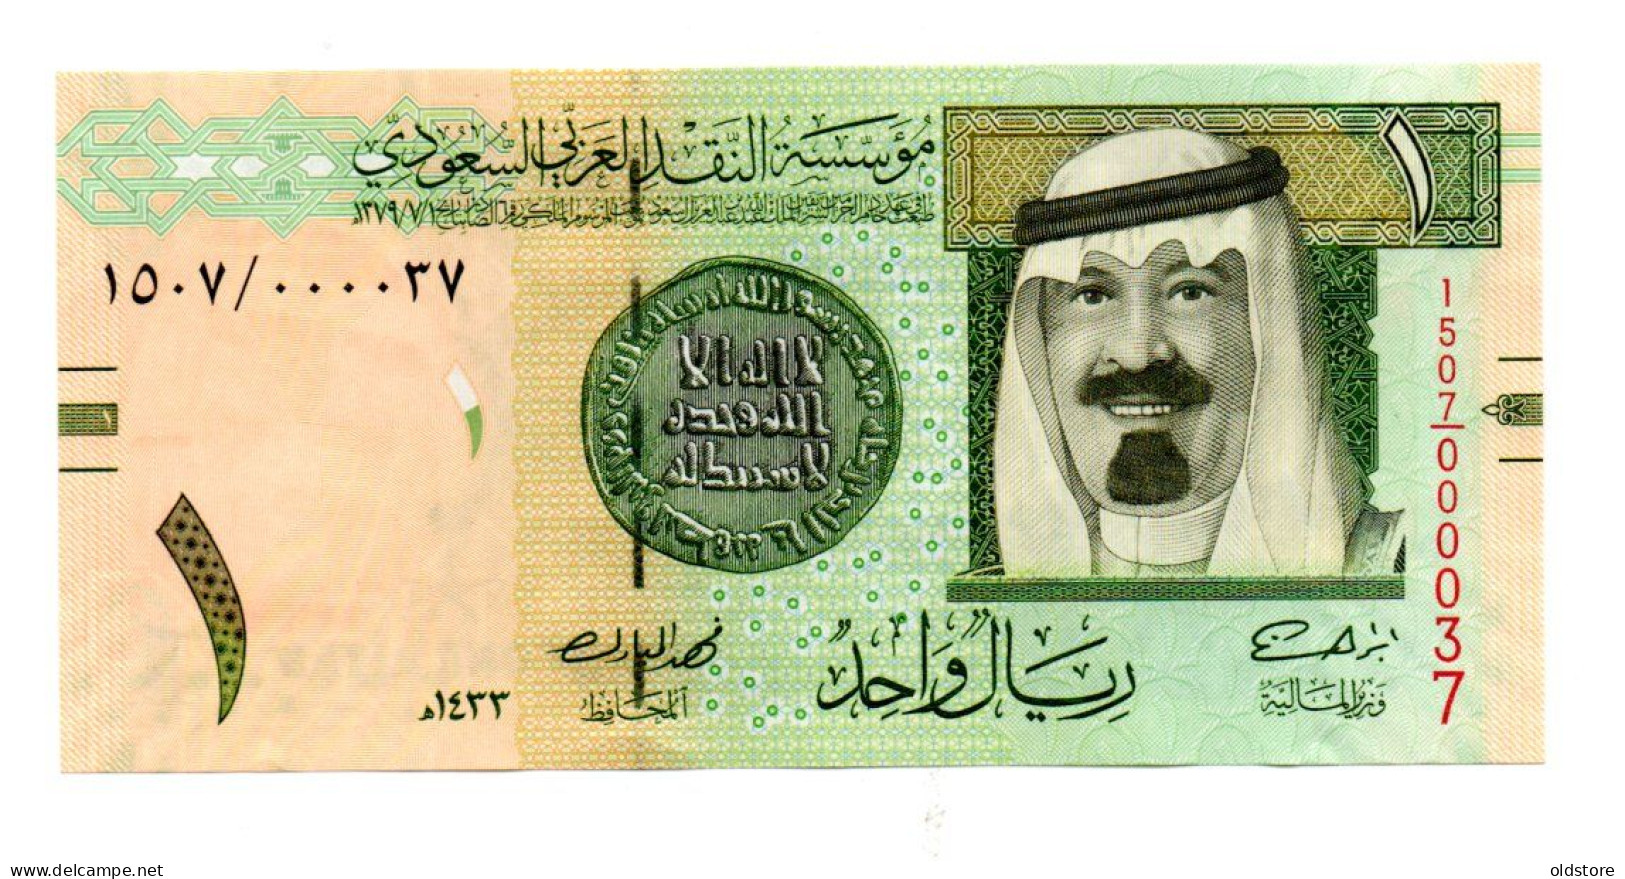 Saudi Arabia Banknotes - One Riyal 2012 Low Serial Number ( 000037 ) - UNC - Saudi-Arabien